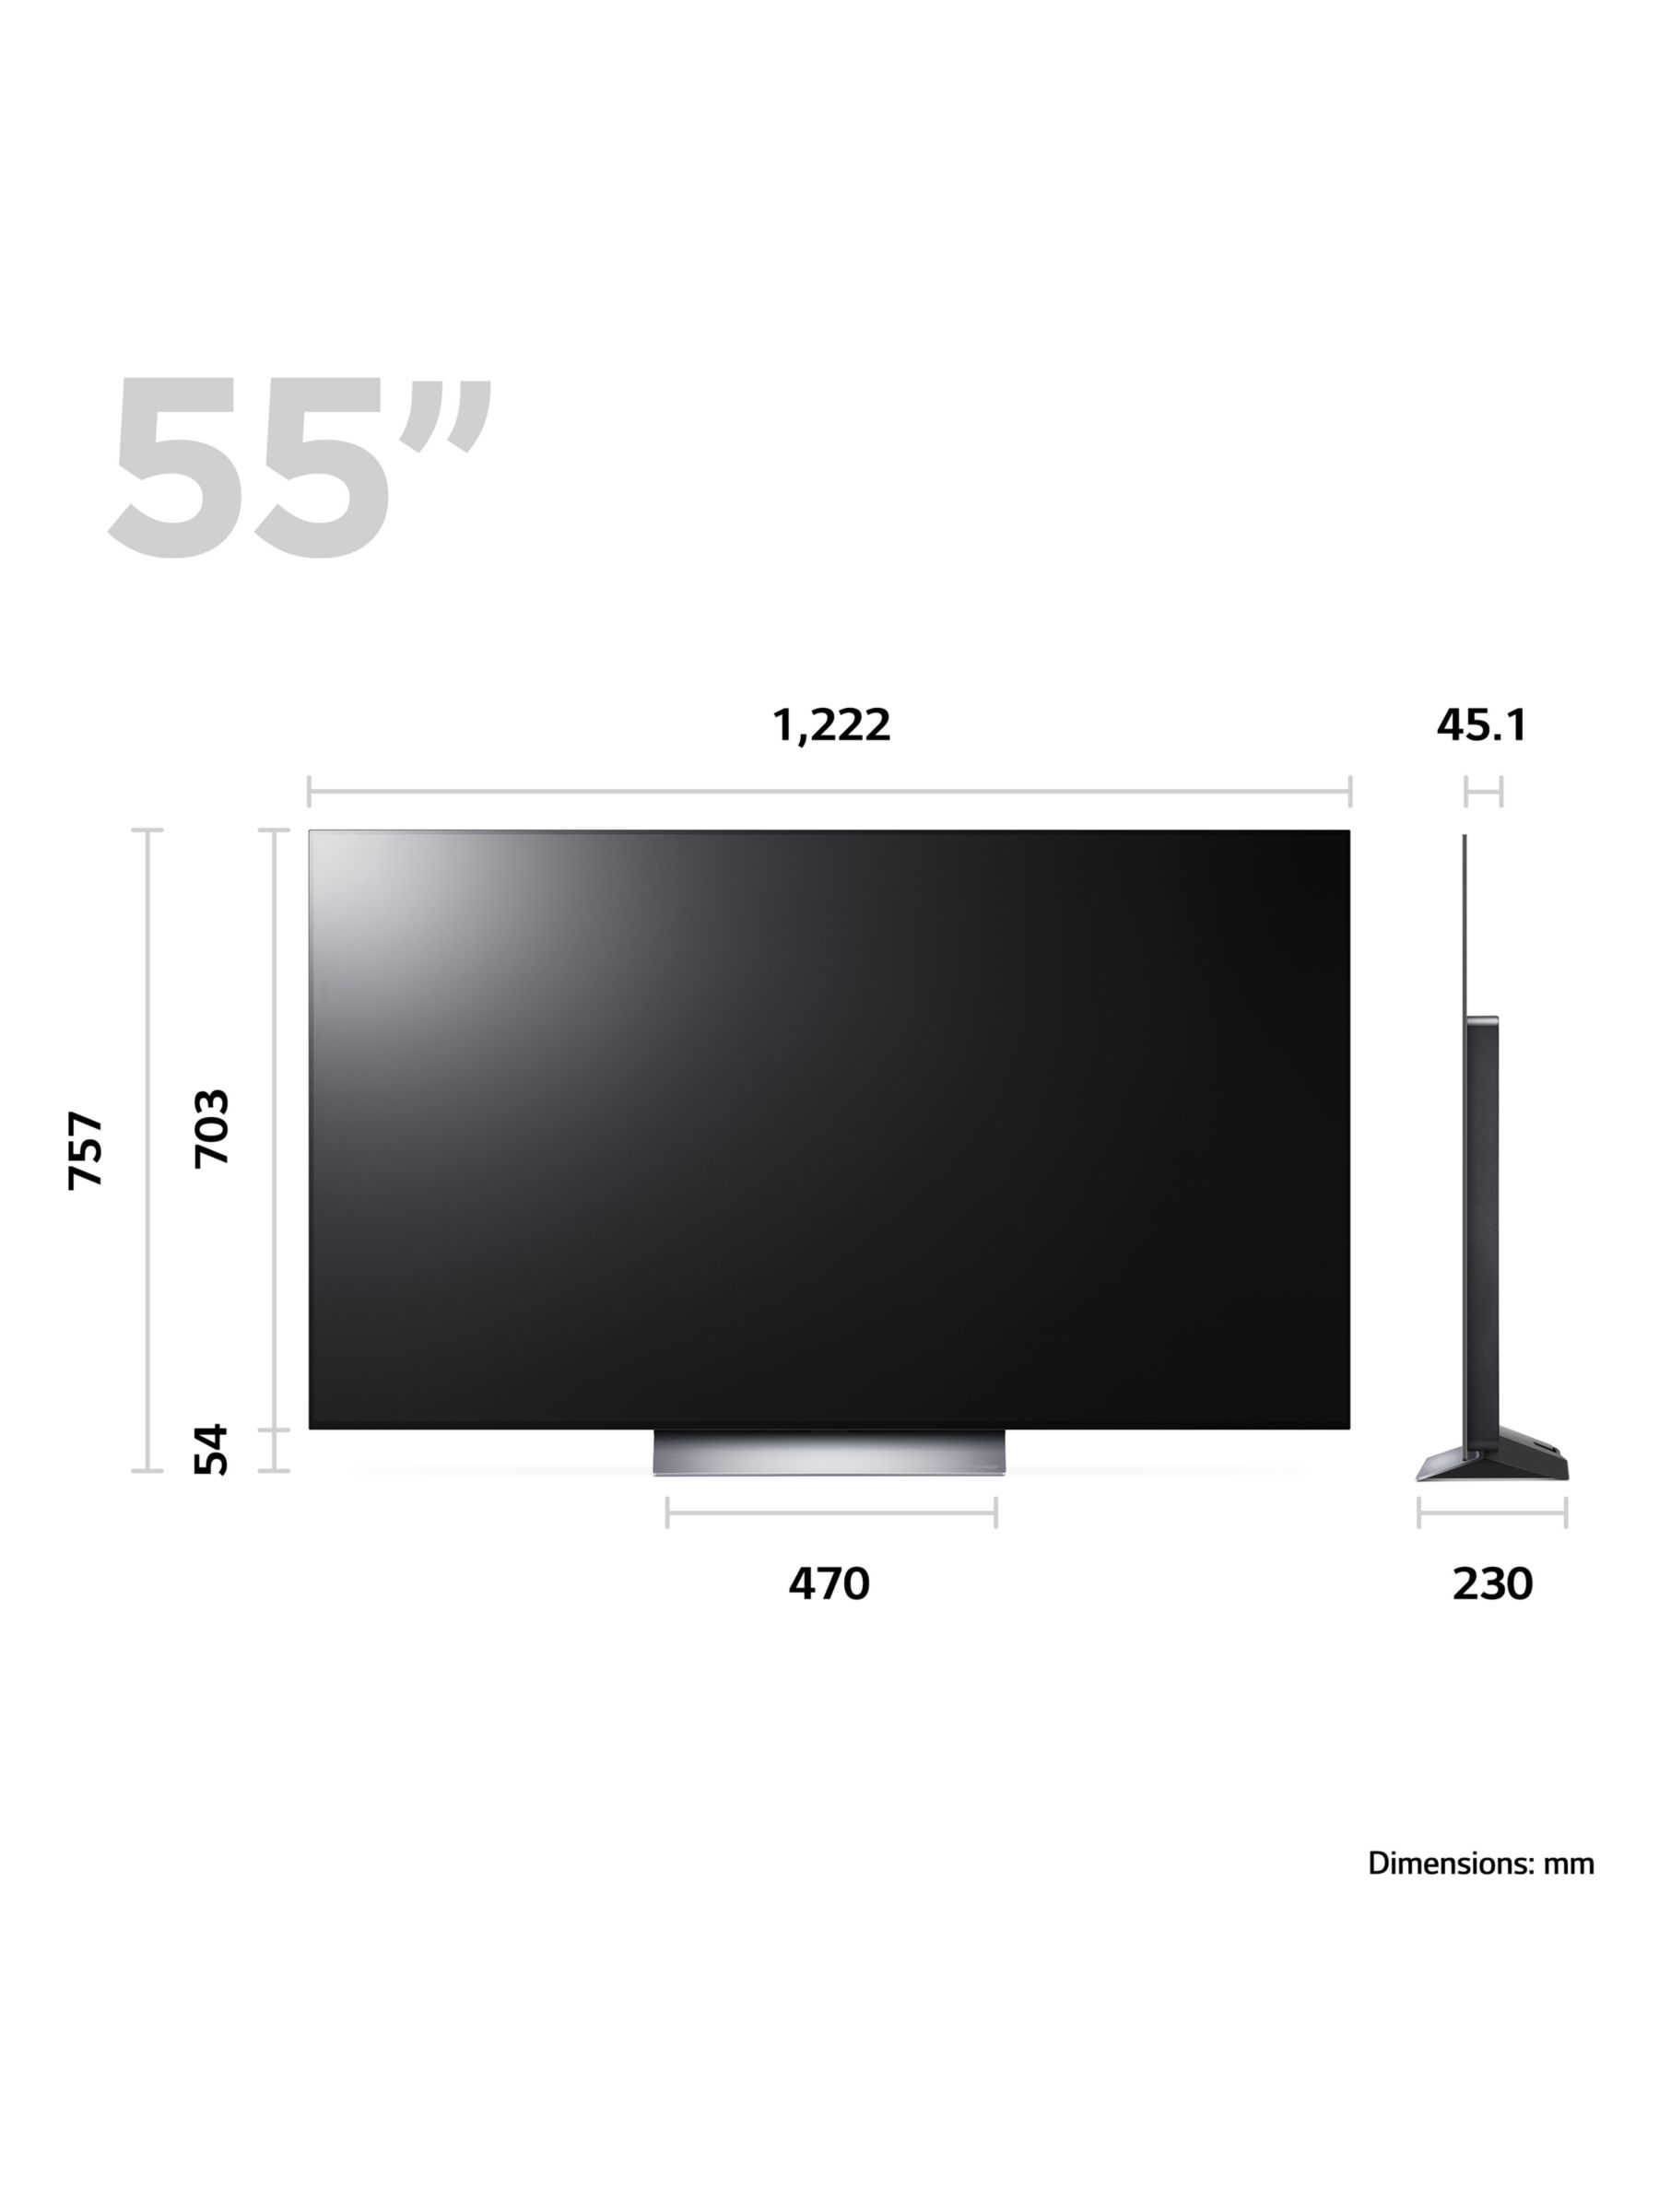 LG OLED55C34LA (2023) OLED HDR 4K Ultra HD Smart TV, 55 inch with